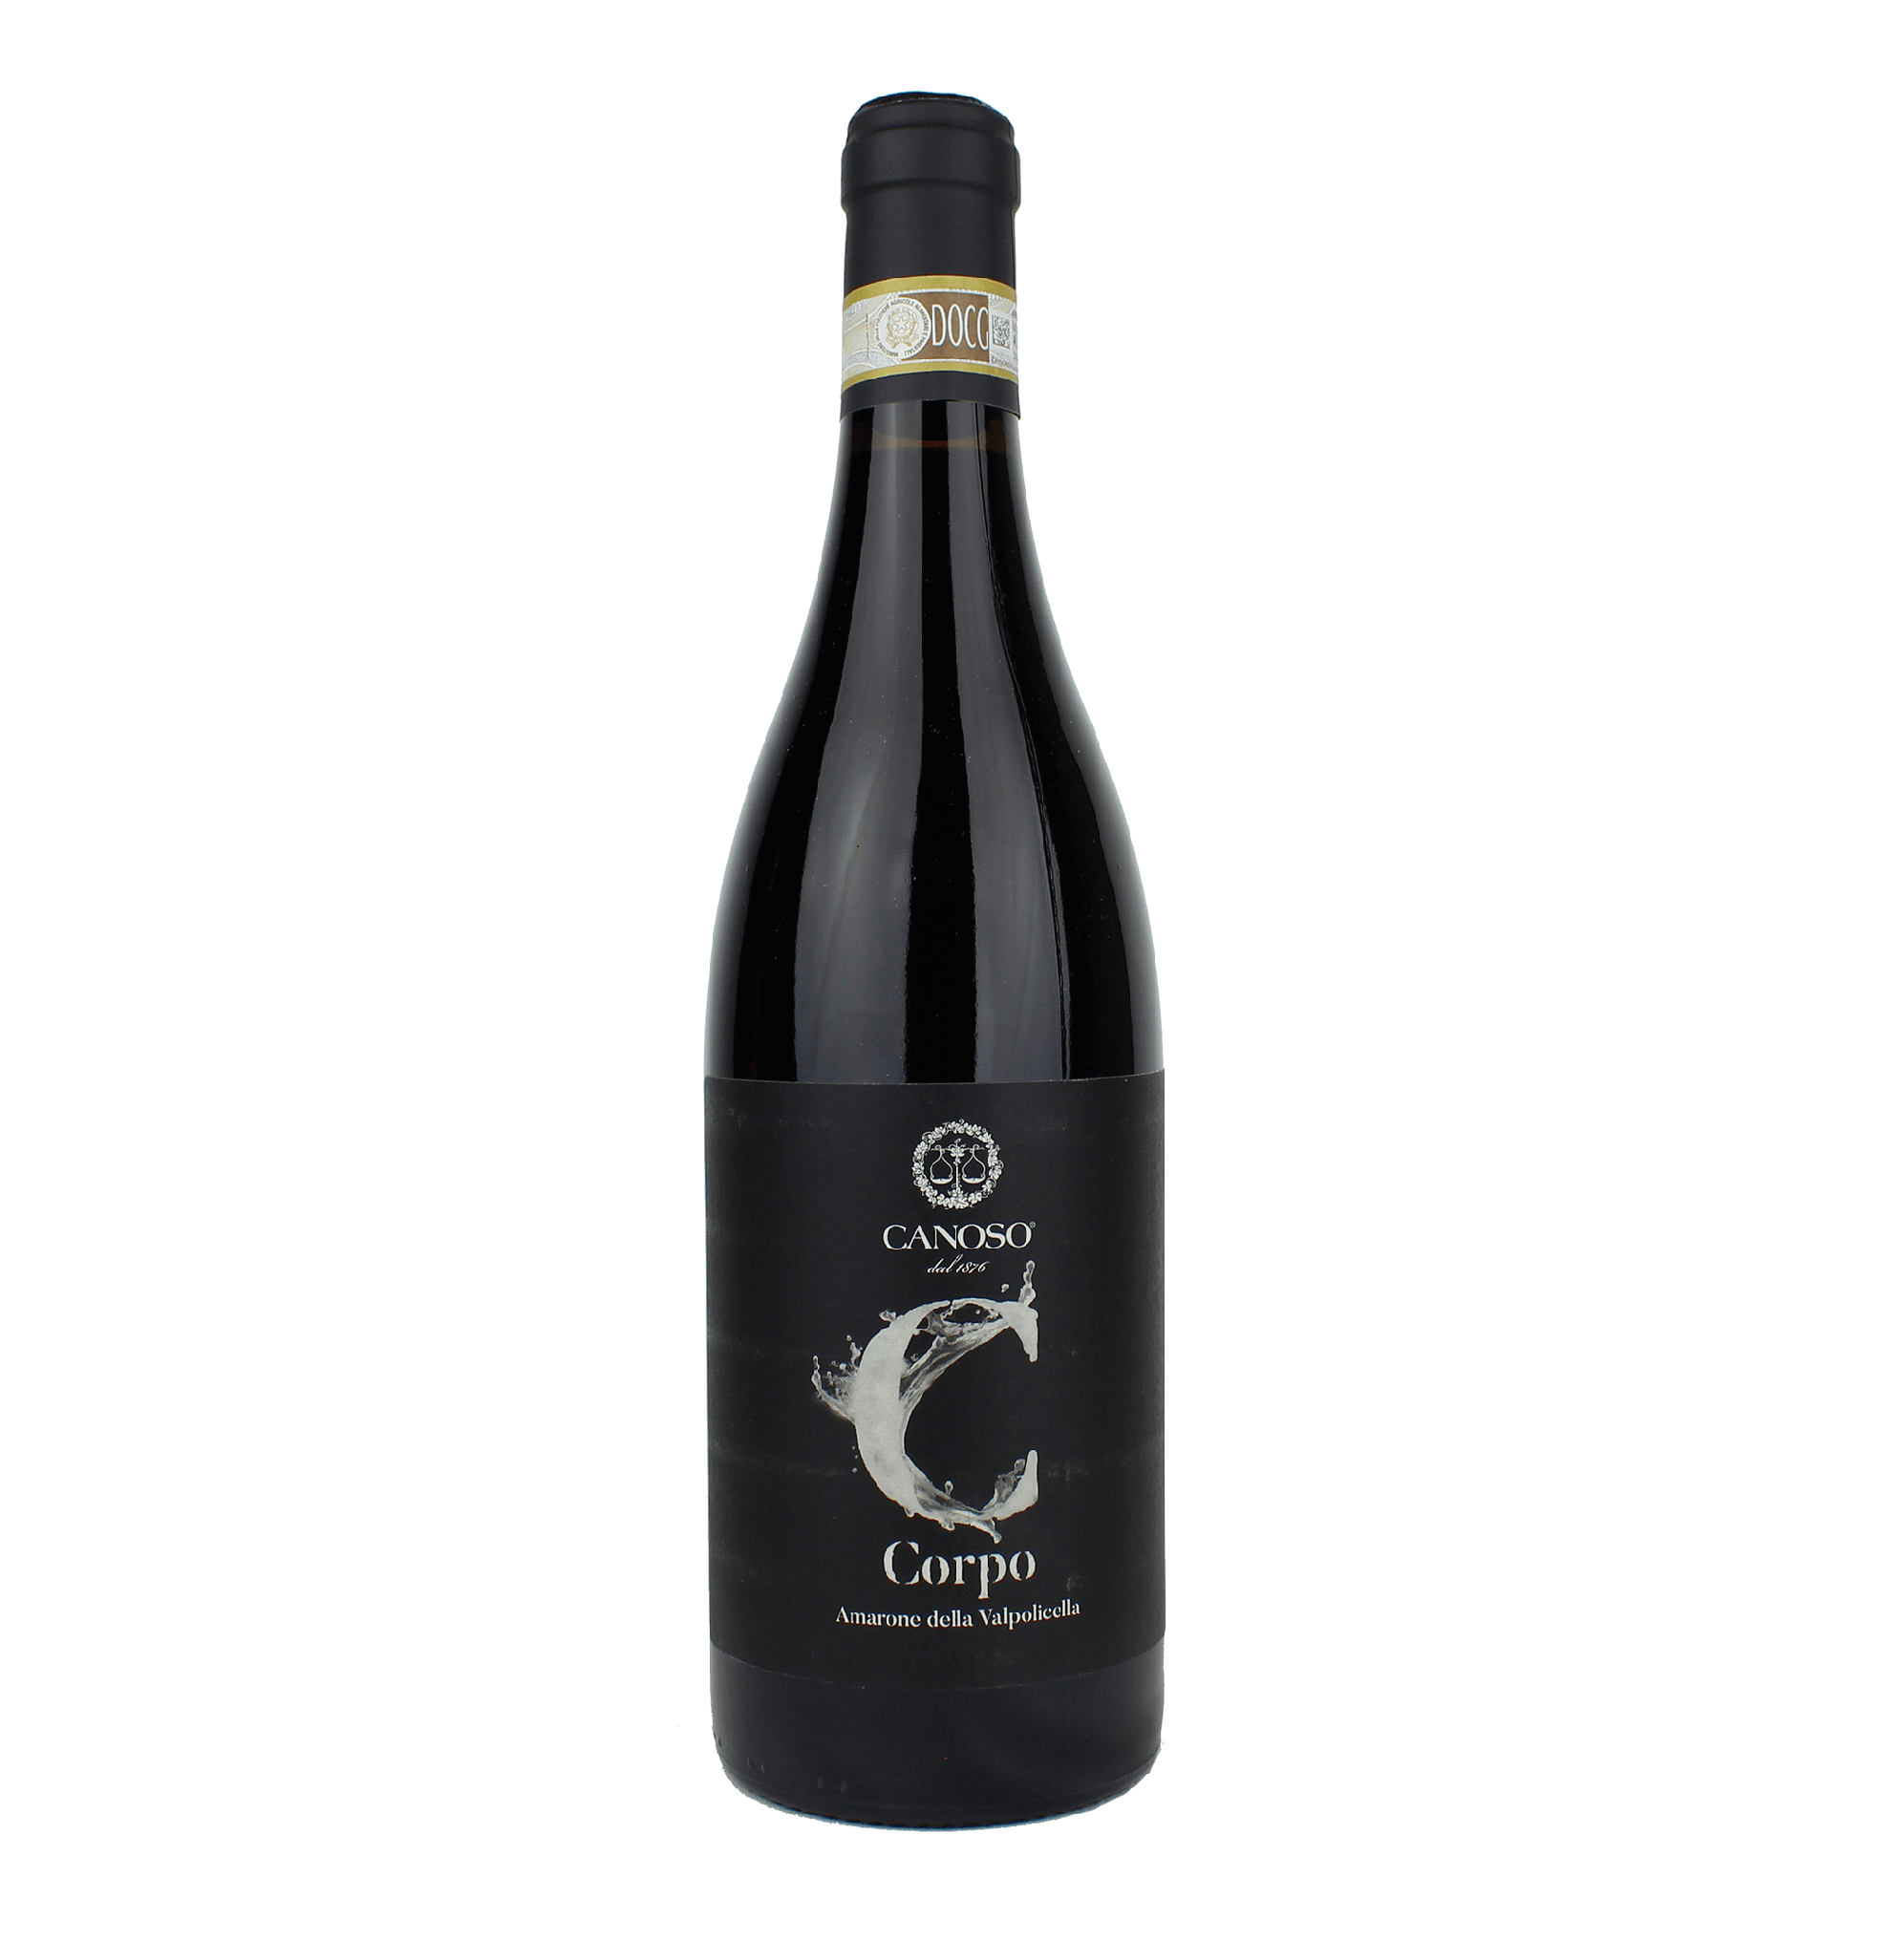 Canoso Corpo Amarone Della Valpolicella DOCG 2015 - Curated Wines